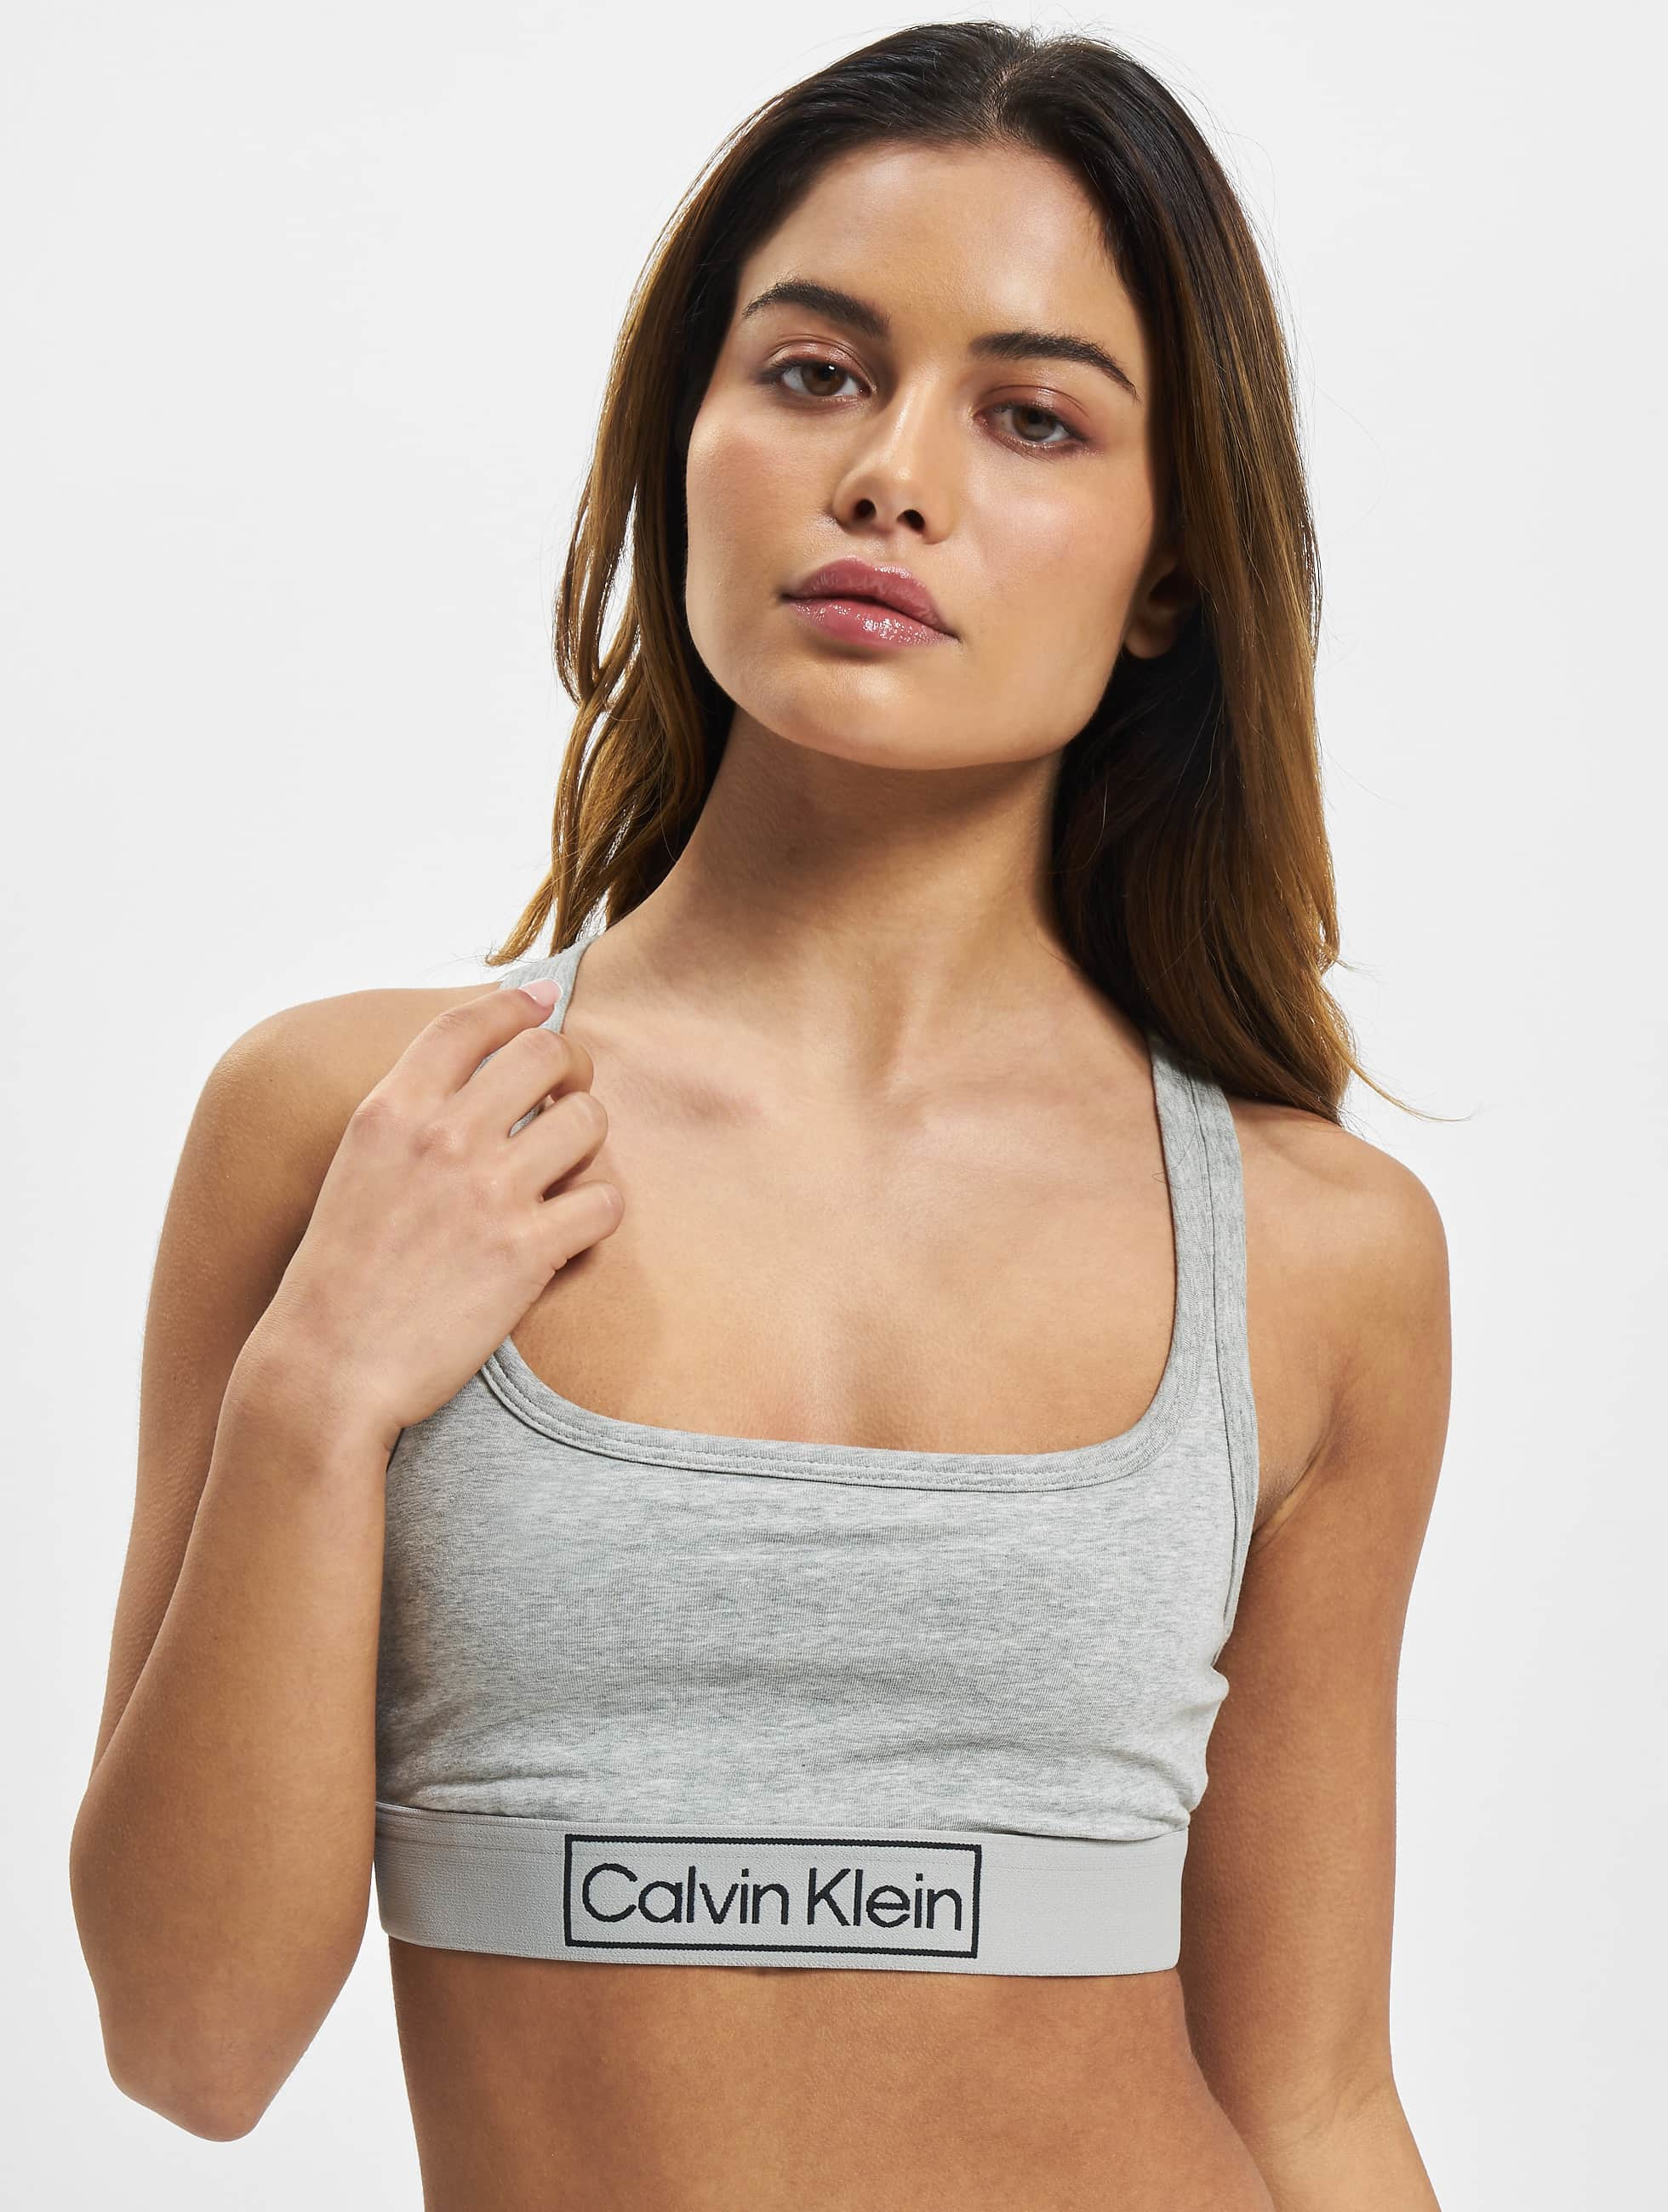 fácilmente dieta Desconocido Calvin Klein Ropa interior / Moda de baño / Ropa interior Underwear Unlined  en gris 972426